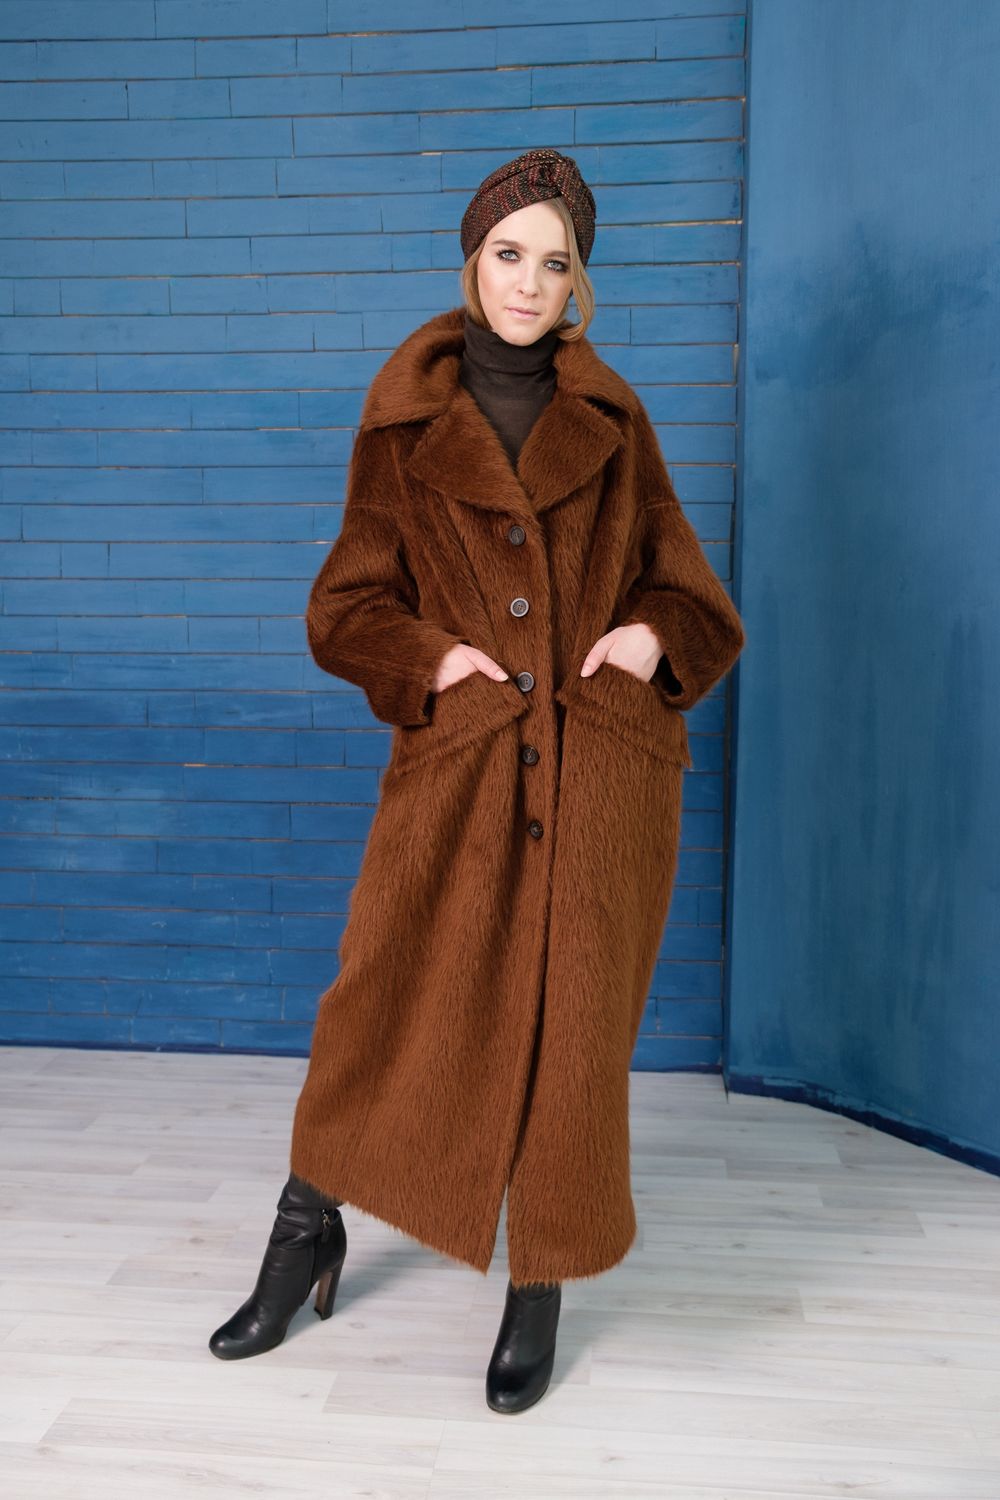 Пальто из альпака фото женские